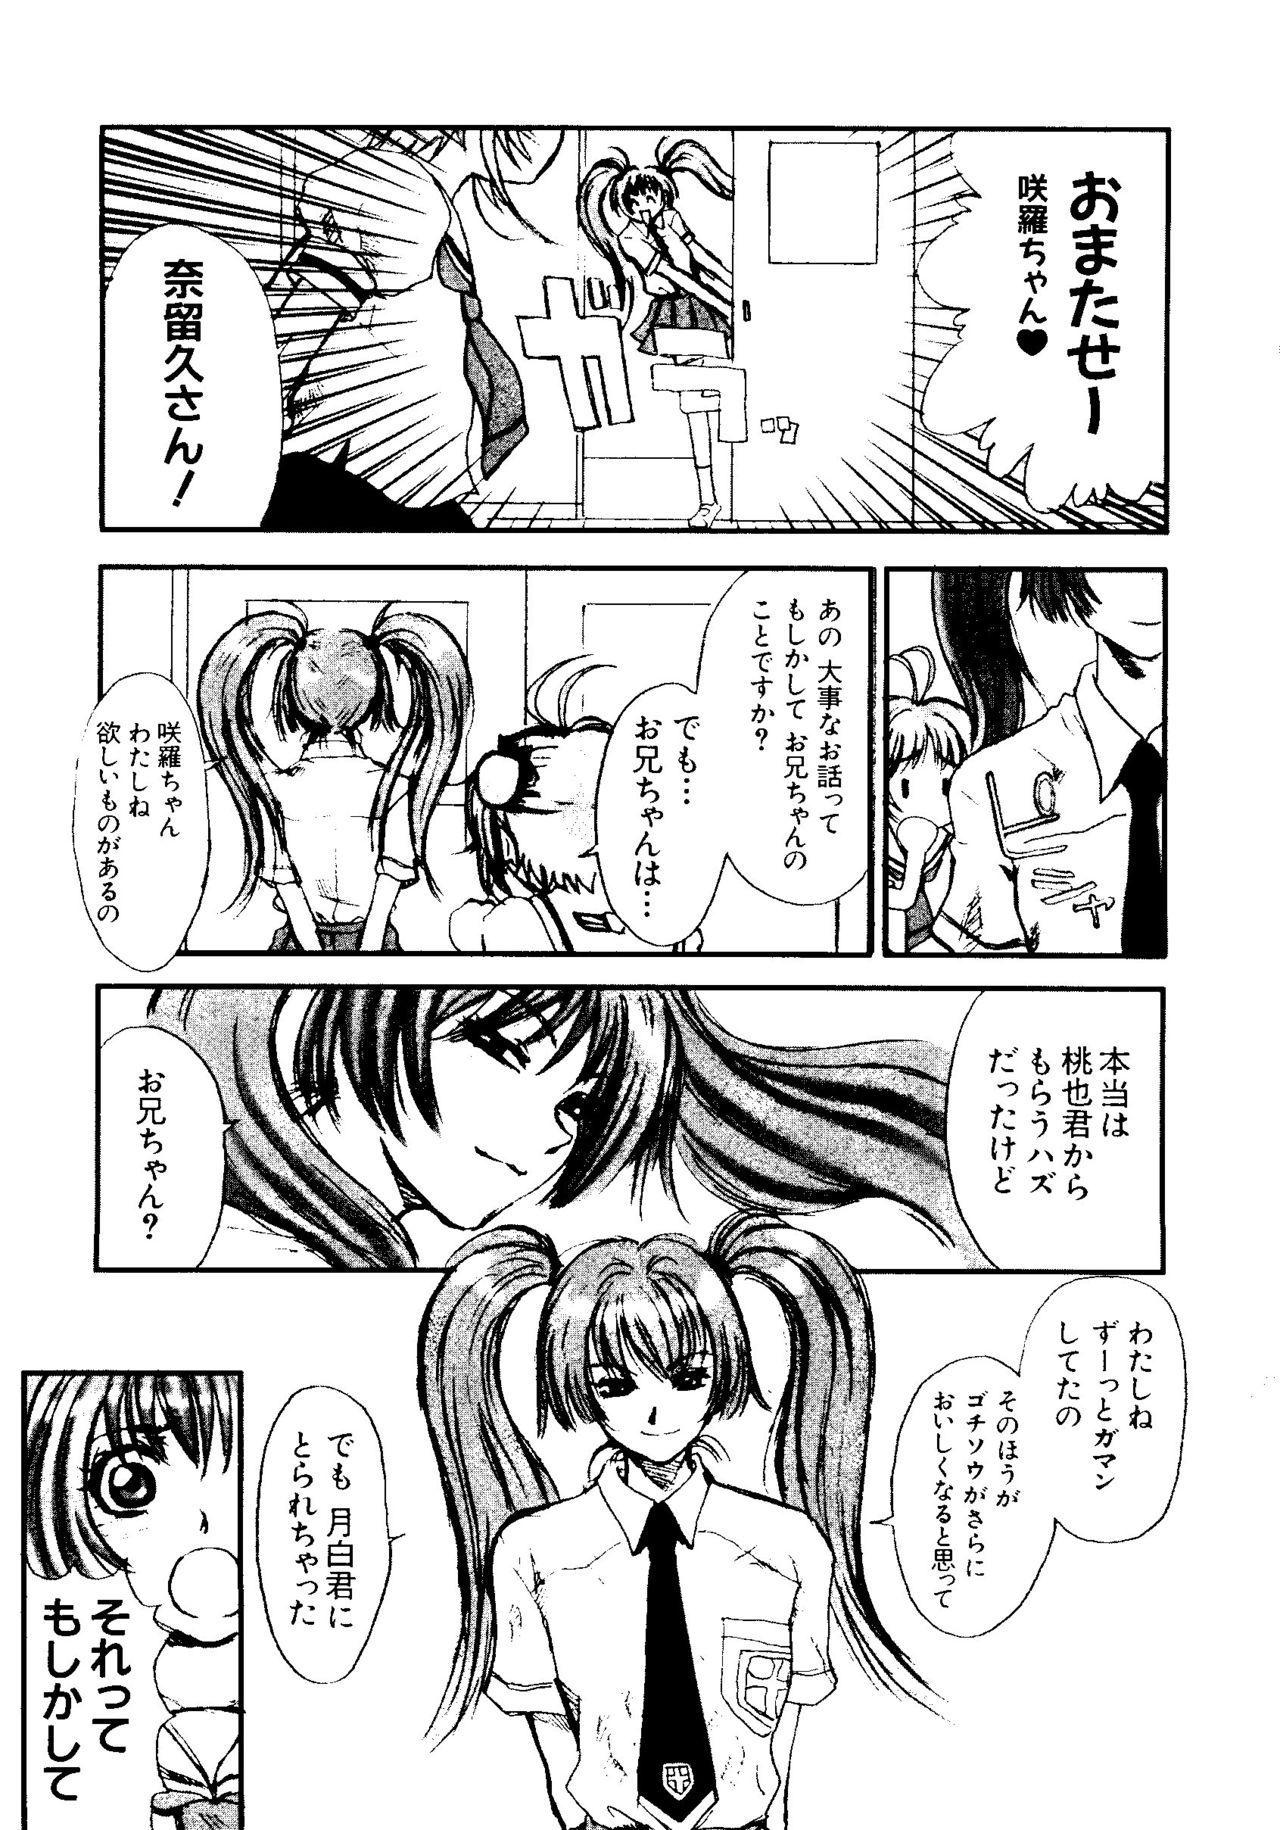 Whatsapp Love Chara Taizen No. 5 - Cardcaptor sakura Ojamajo doremi Digimon adventure Ecoko Azuki-chan Masturbacion - Page 8